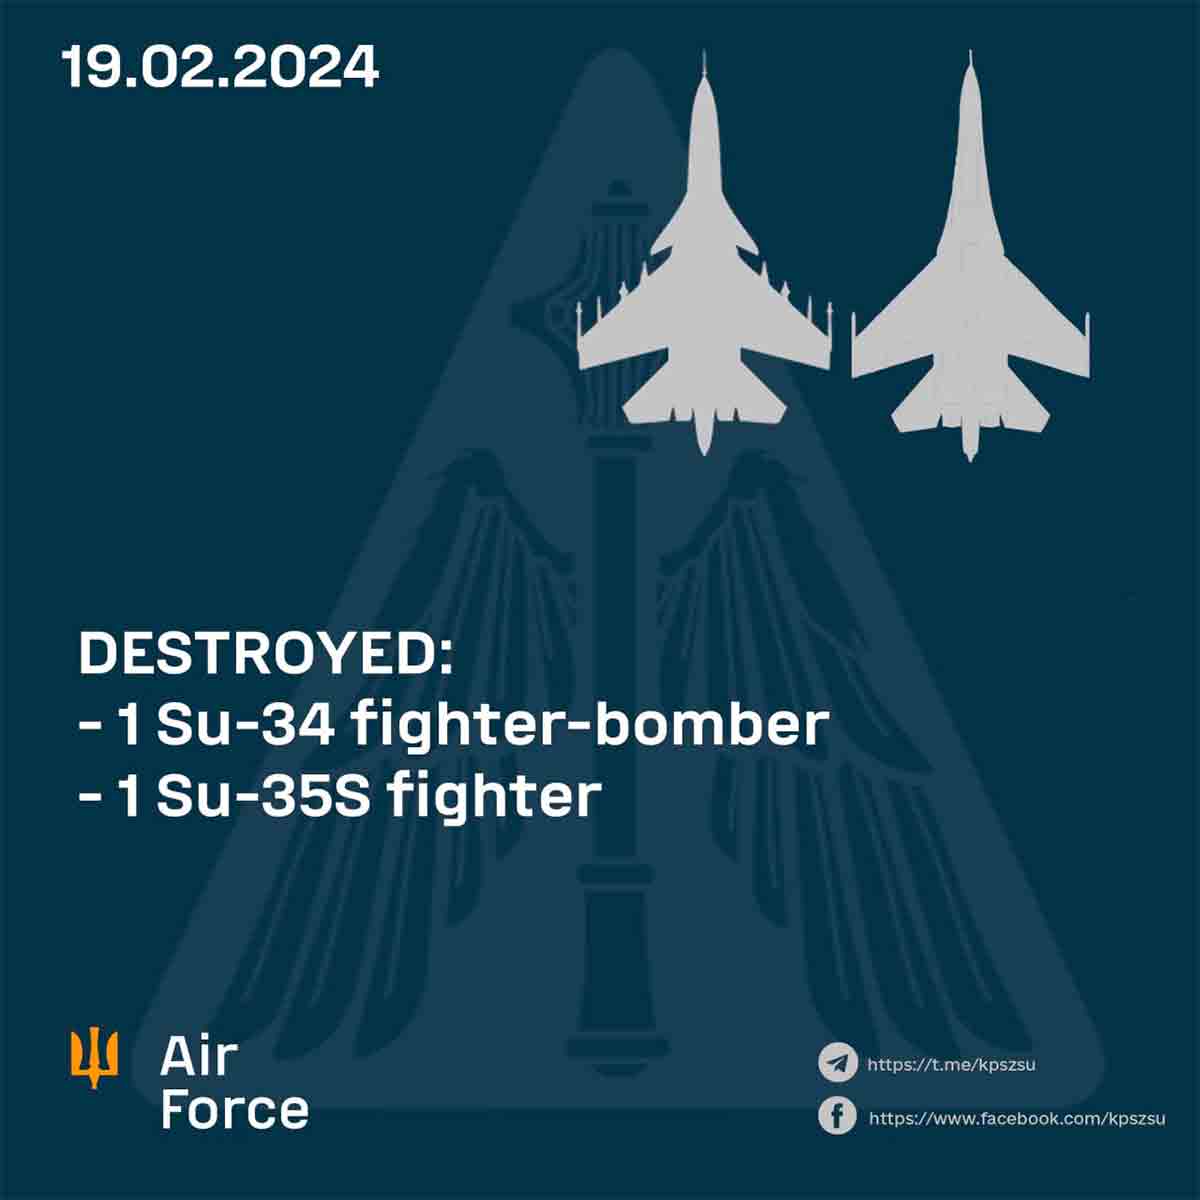 ウクライナ空軍、3日間で合計6機のロシア戦闘機を撃墜すると発表